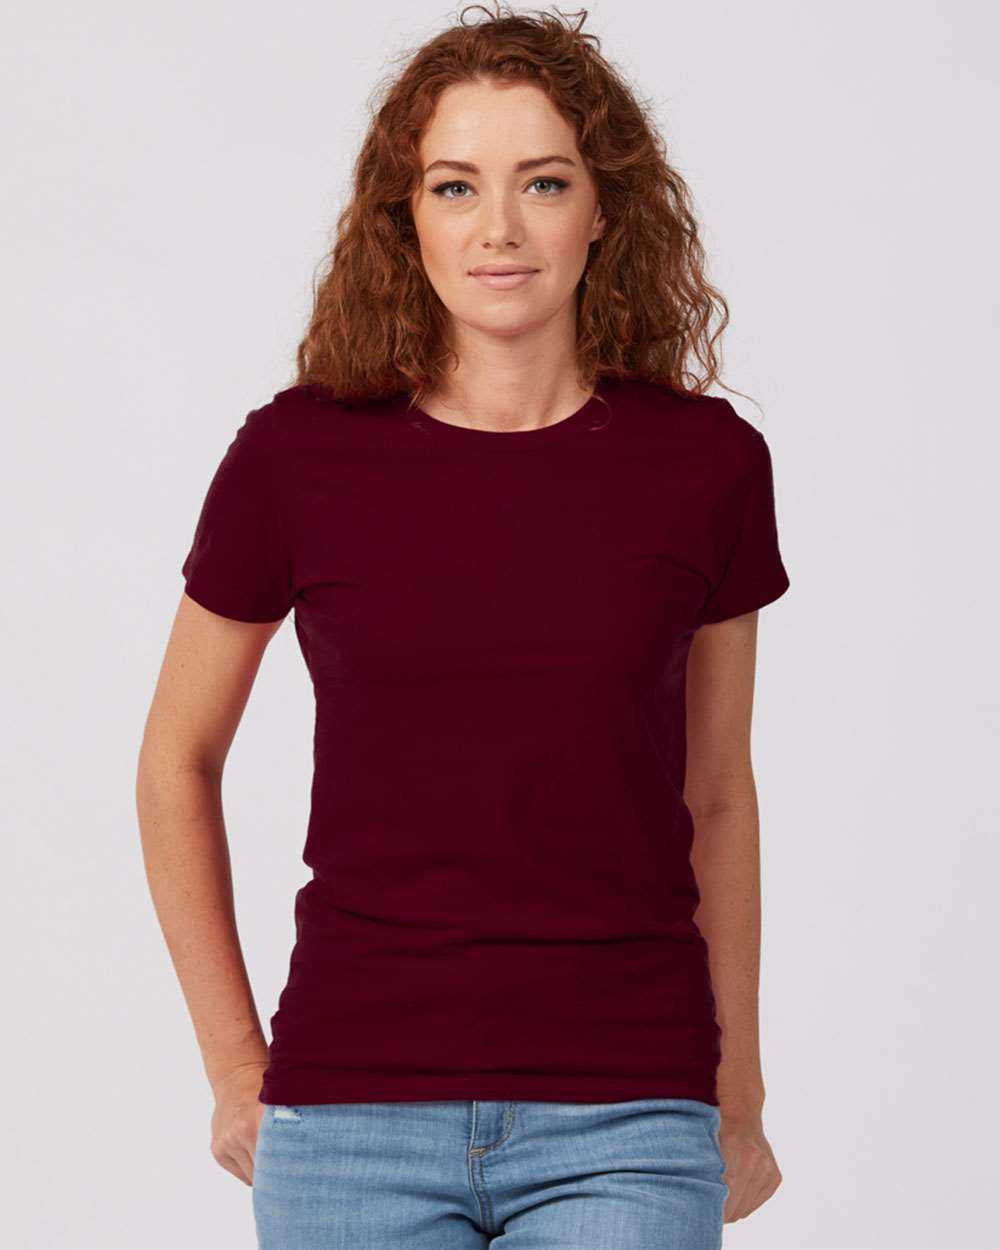 Tultex 516 Women&#39;s Premium Cotton T-Shirt - Burgundy - HIT a Double